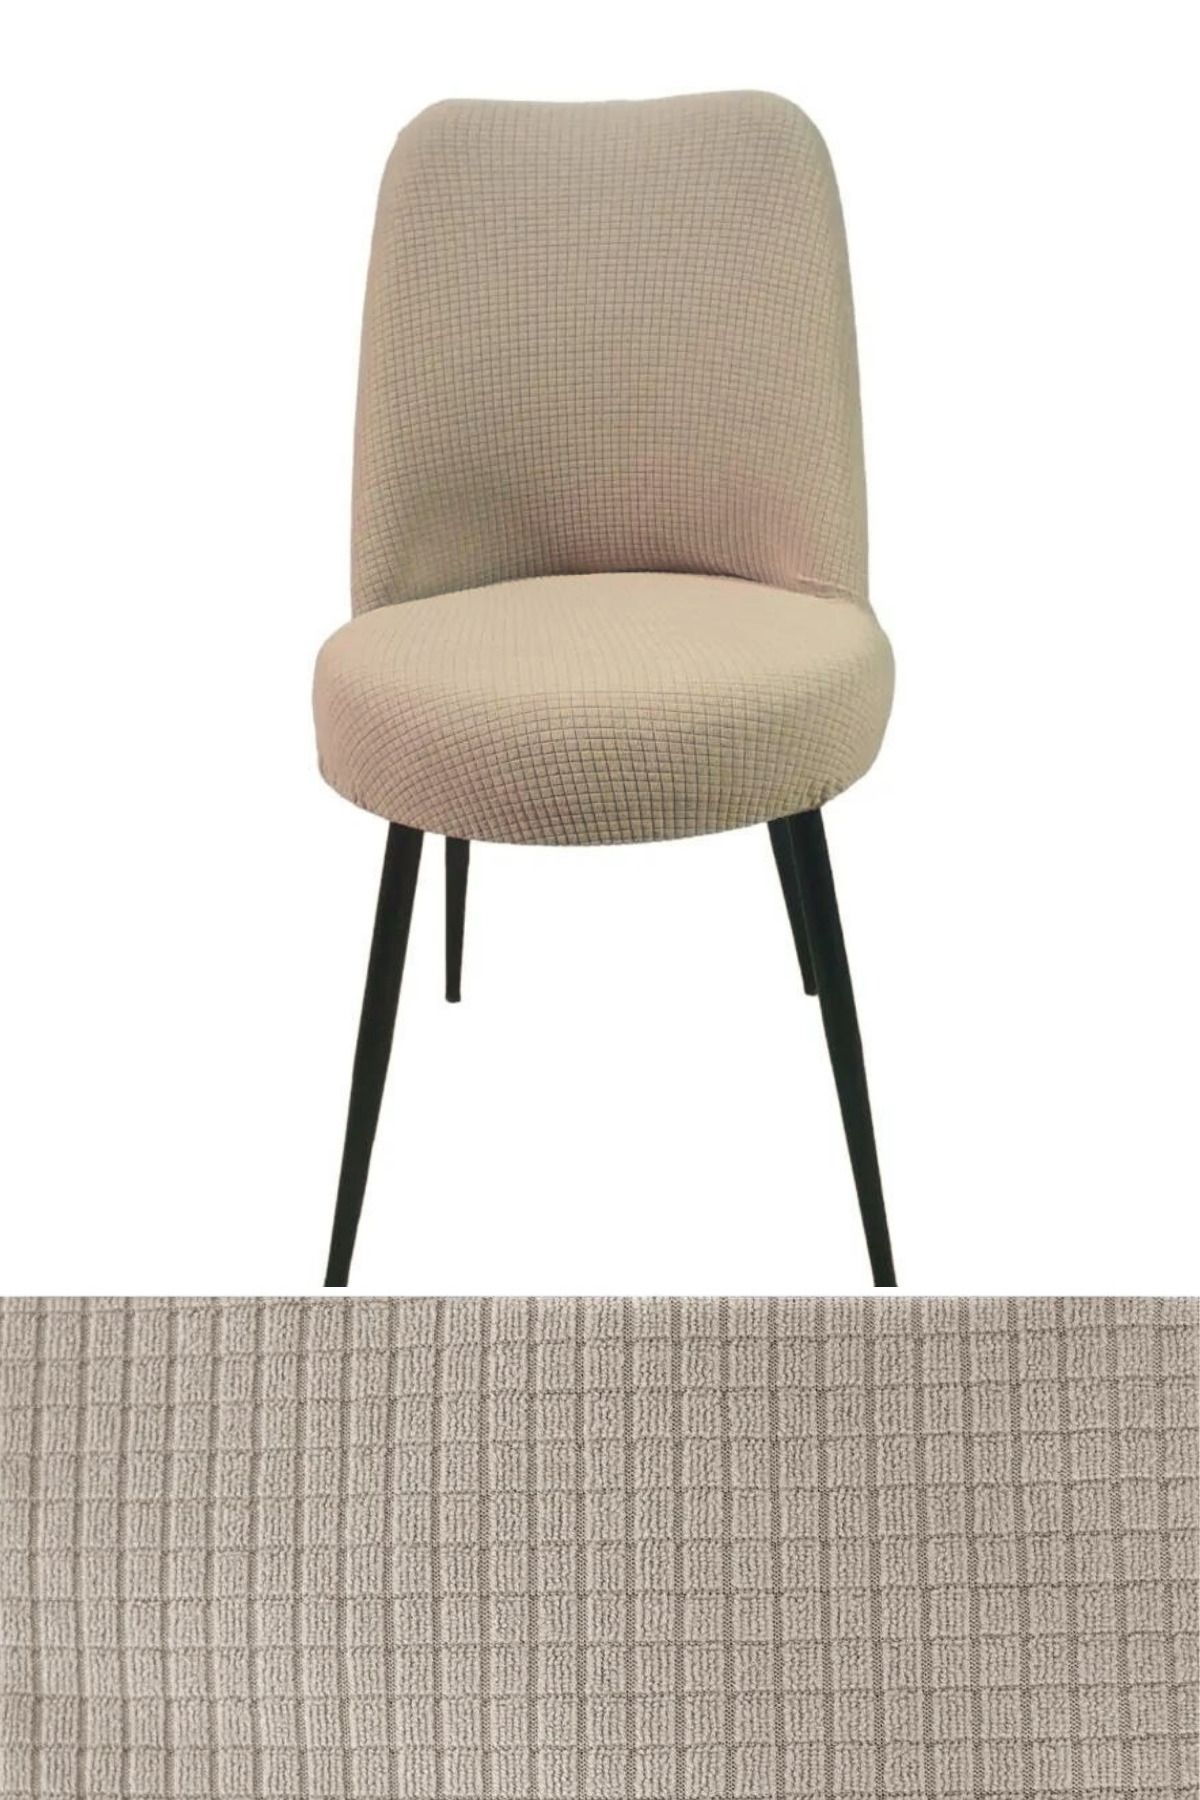 HEYTGAH Pitikare Sandalye Kılıfı Retro Oval Sandalye Örtüsü Sandalye Kılıfı_1 Adet Yıkanabilir Vizon Renk